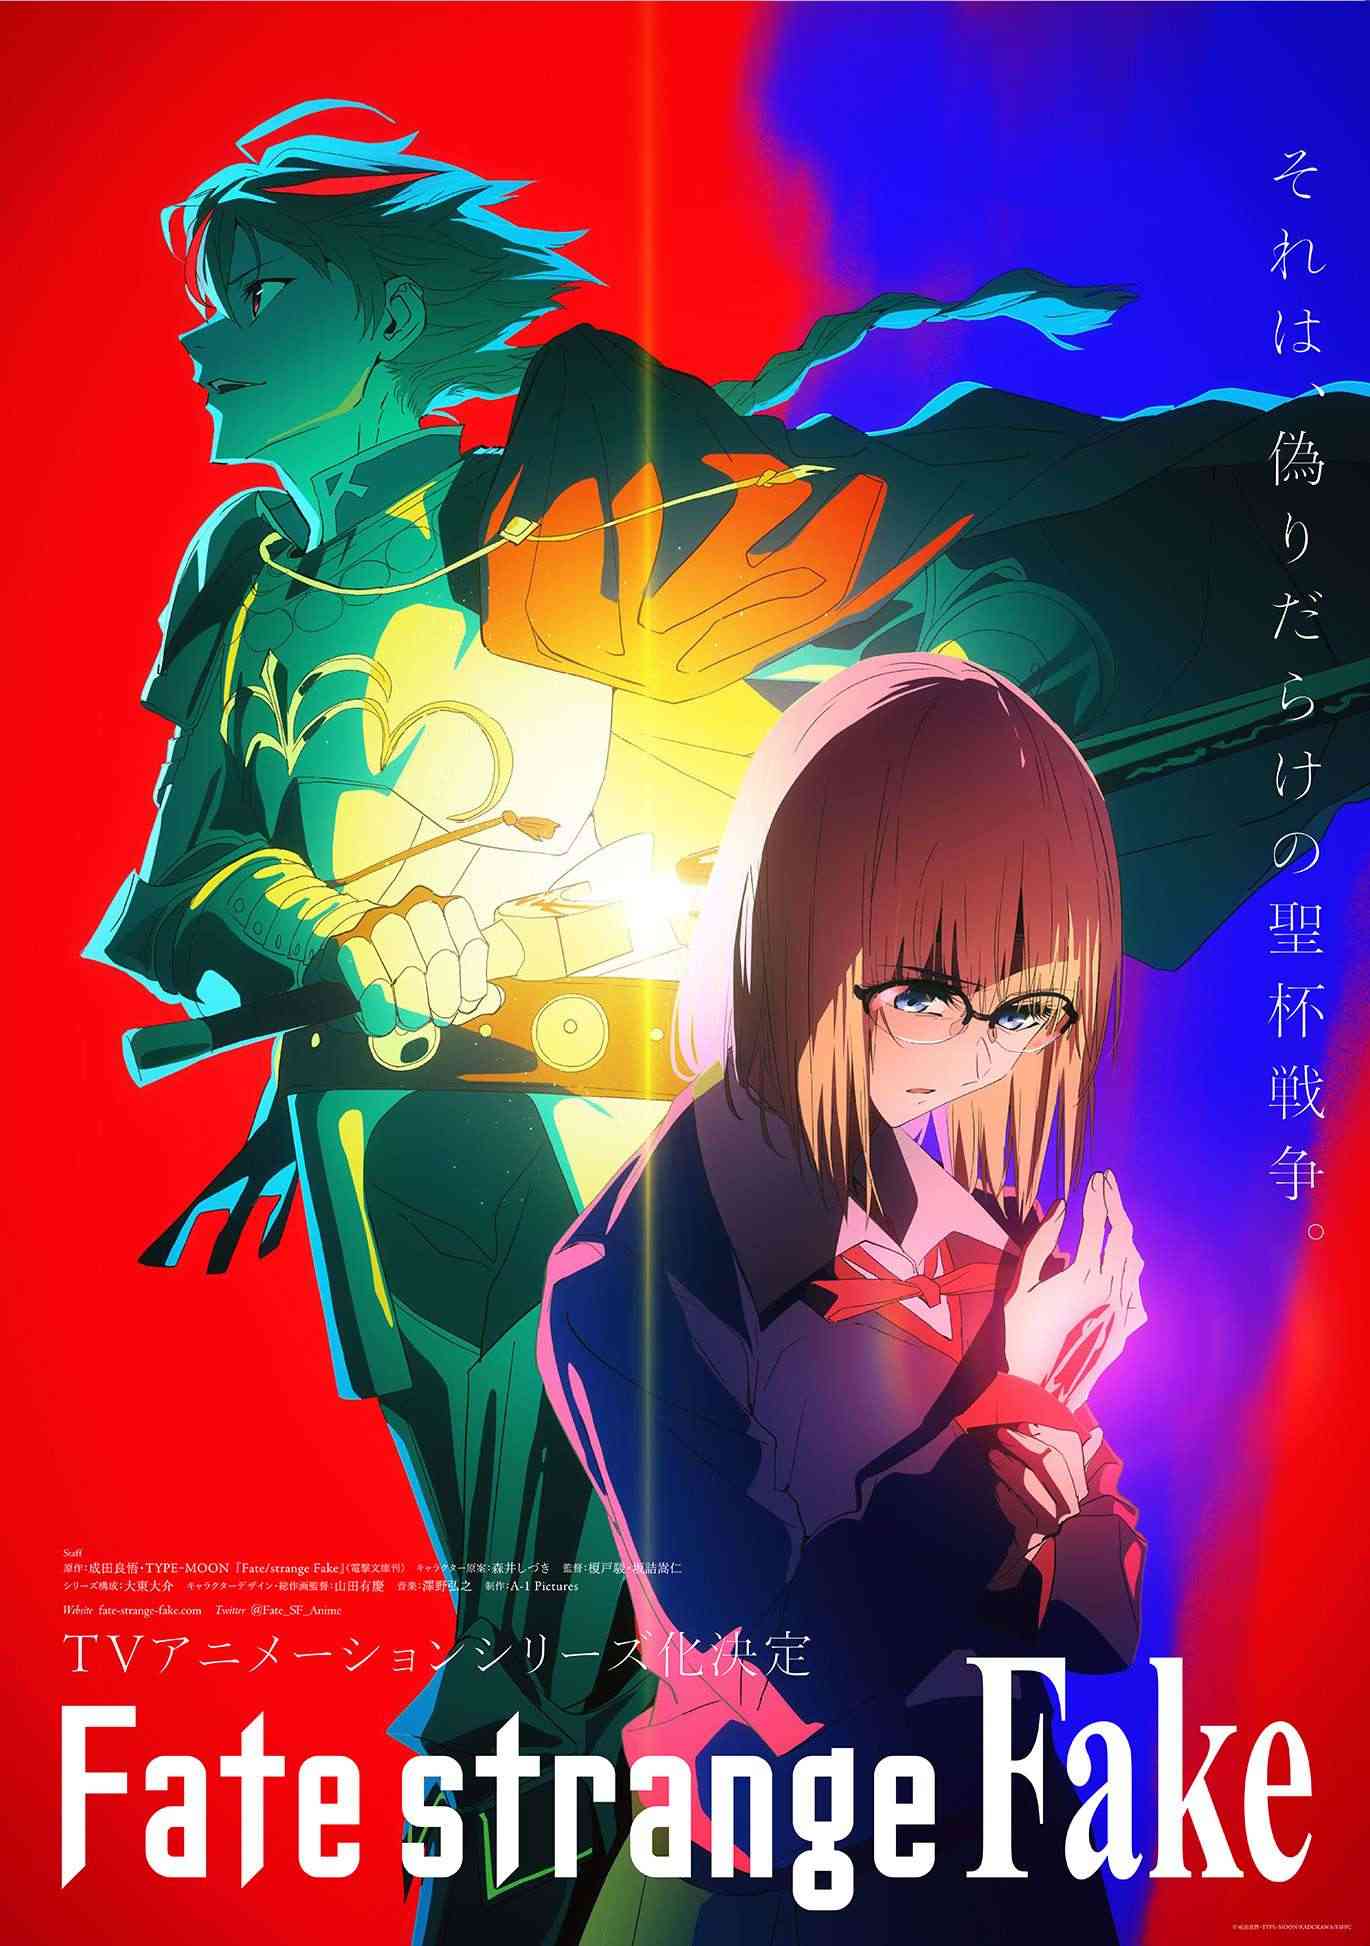 Lại thêm một cái tên nữa của series Fate sắp sửa được chuyển thể thành anime, lần này là Fate/Strange Fake